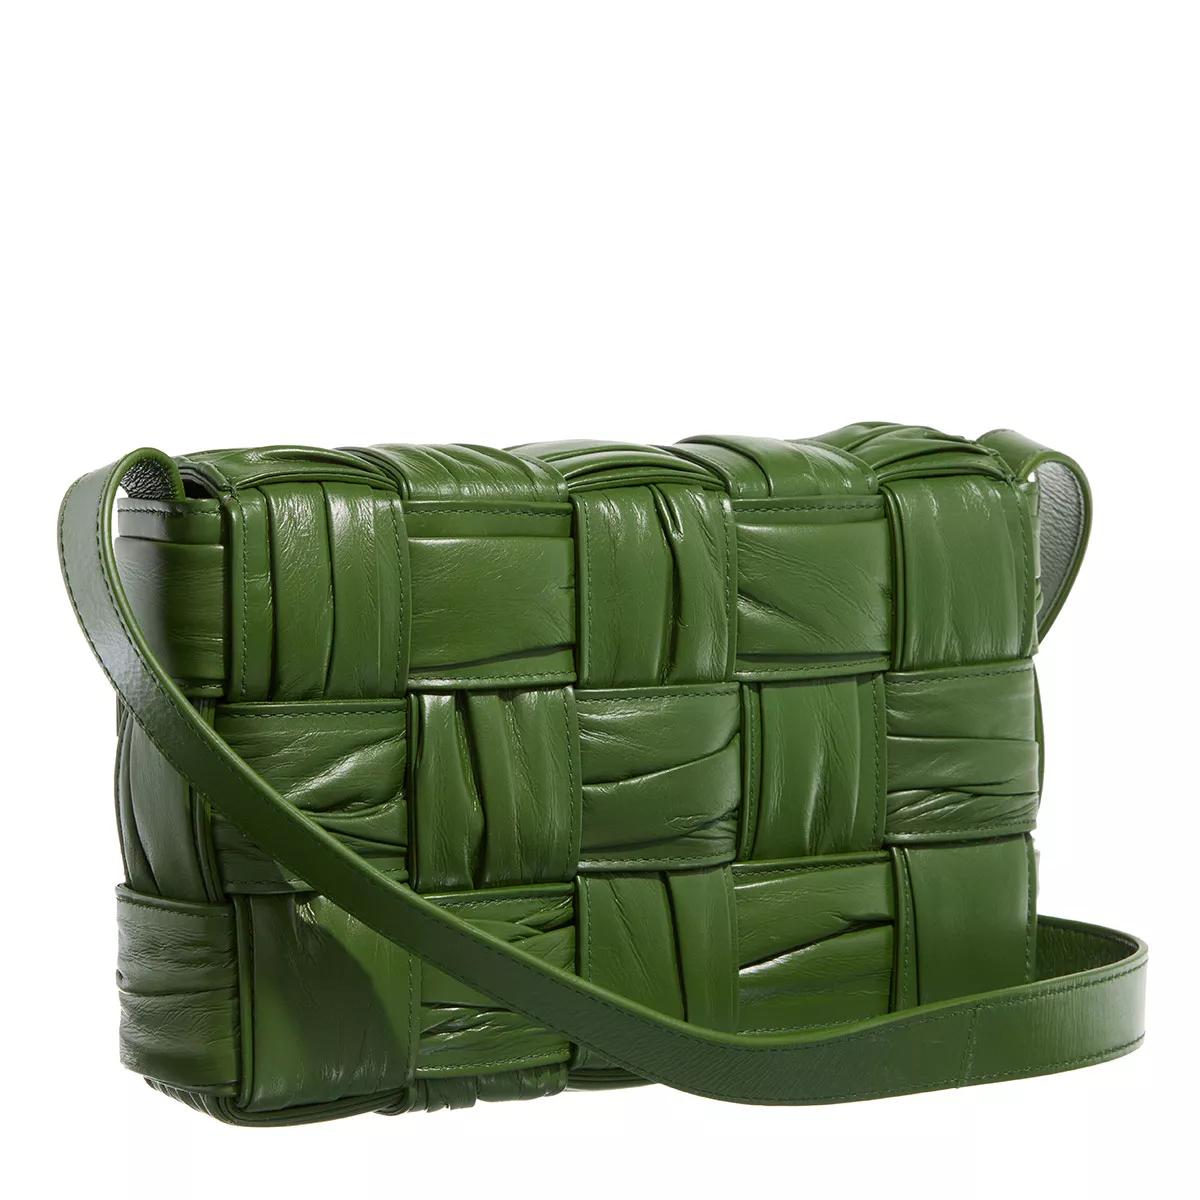 Bottega Veneta Crossbody bags Cassette Shoulder Bag in groen